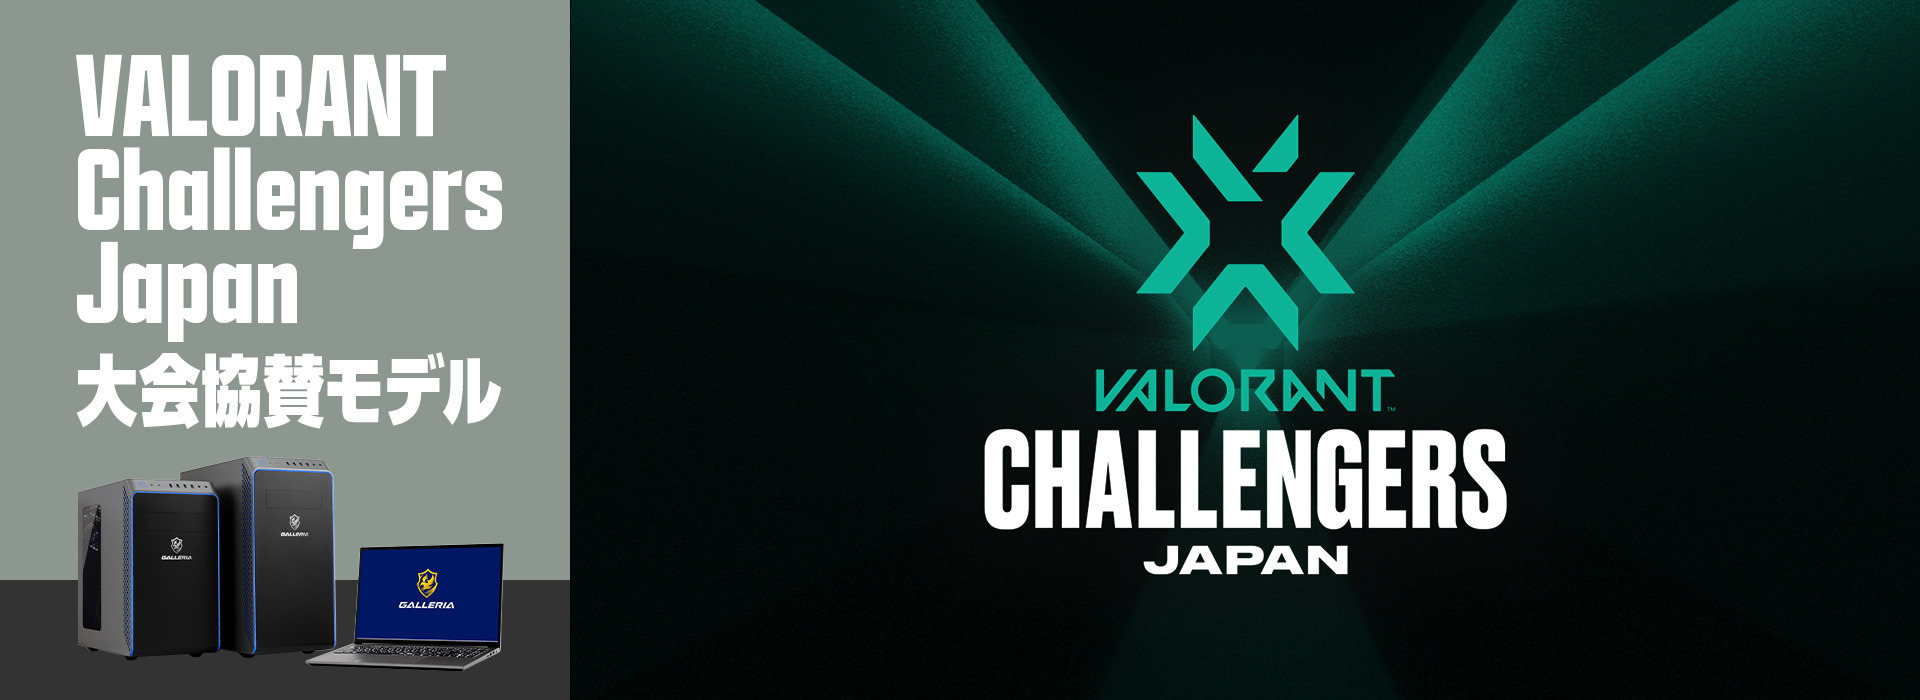 ドスパラ「GALLERIA」にてゲーミングPC「VALORANT CHALLENGERS JAPAN